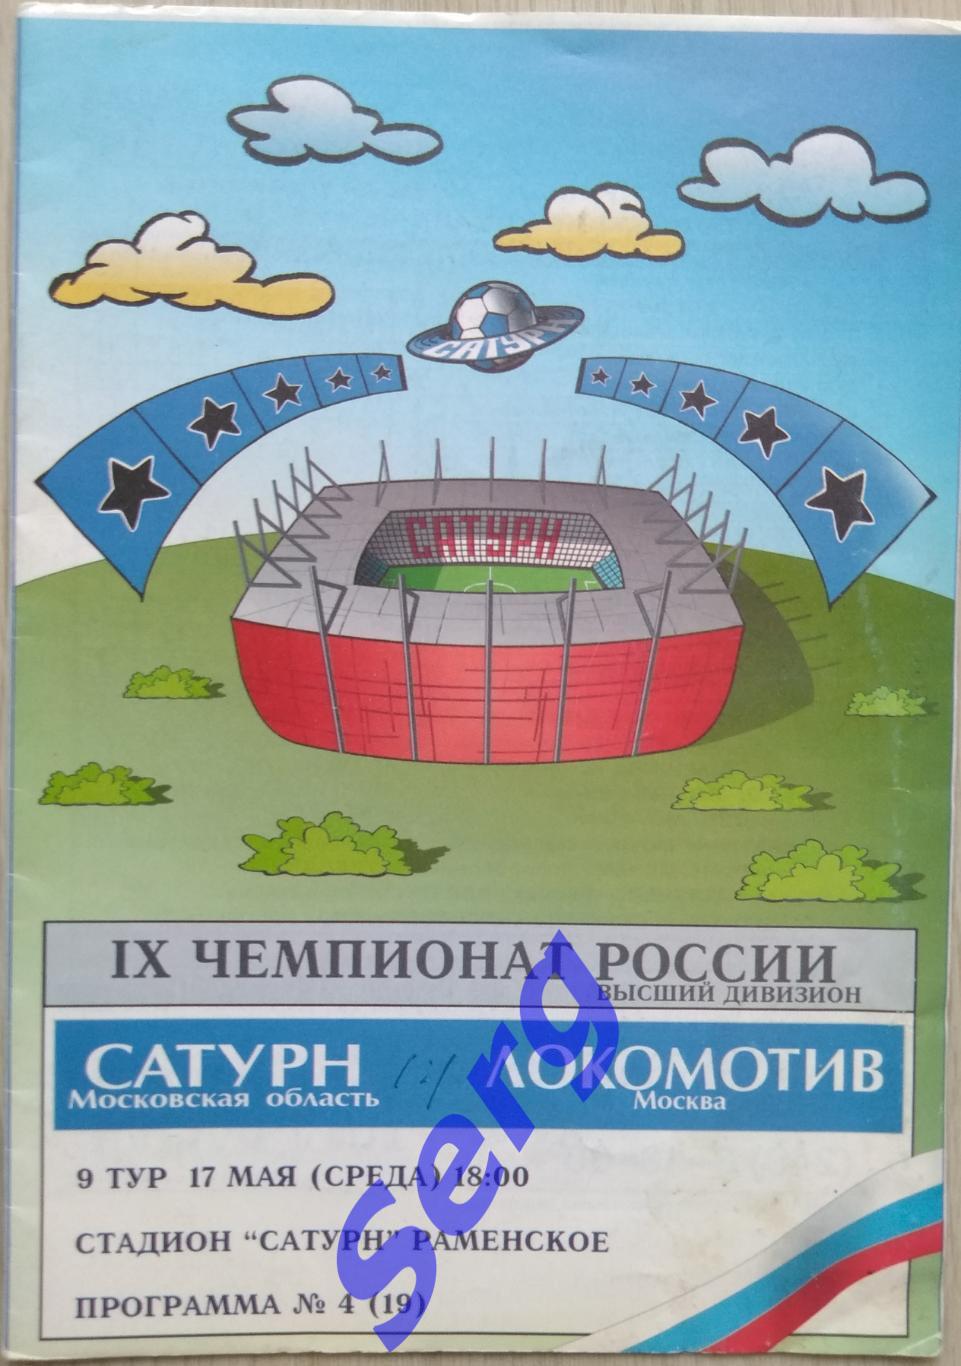 Сатурн Московская область - Локомотив Москва - 17 мая 2000 год